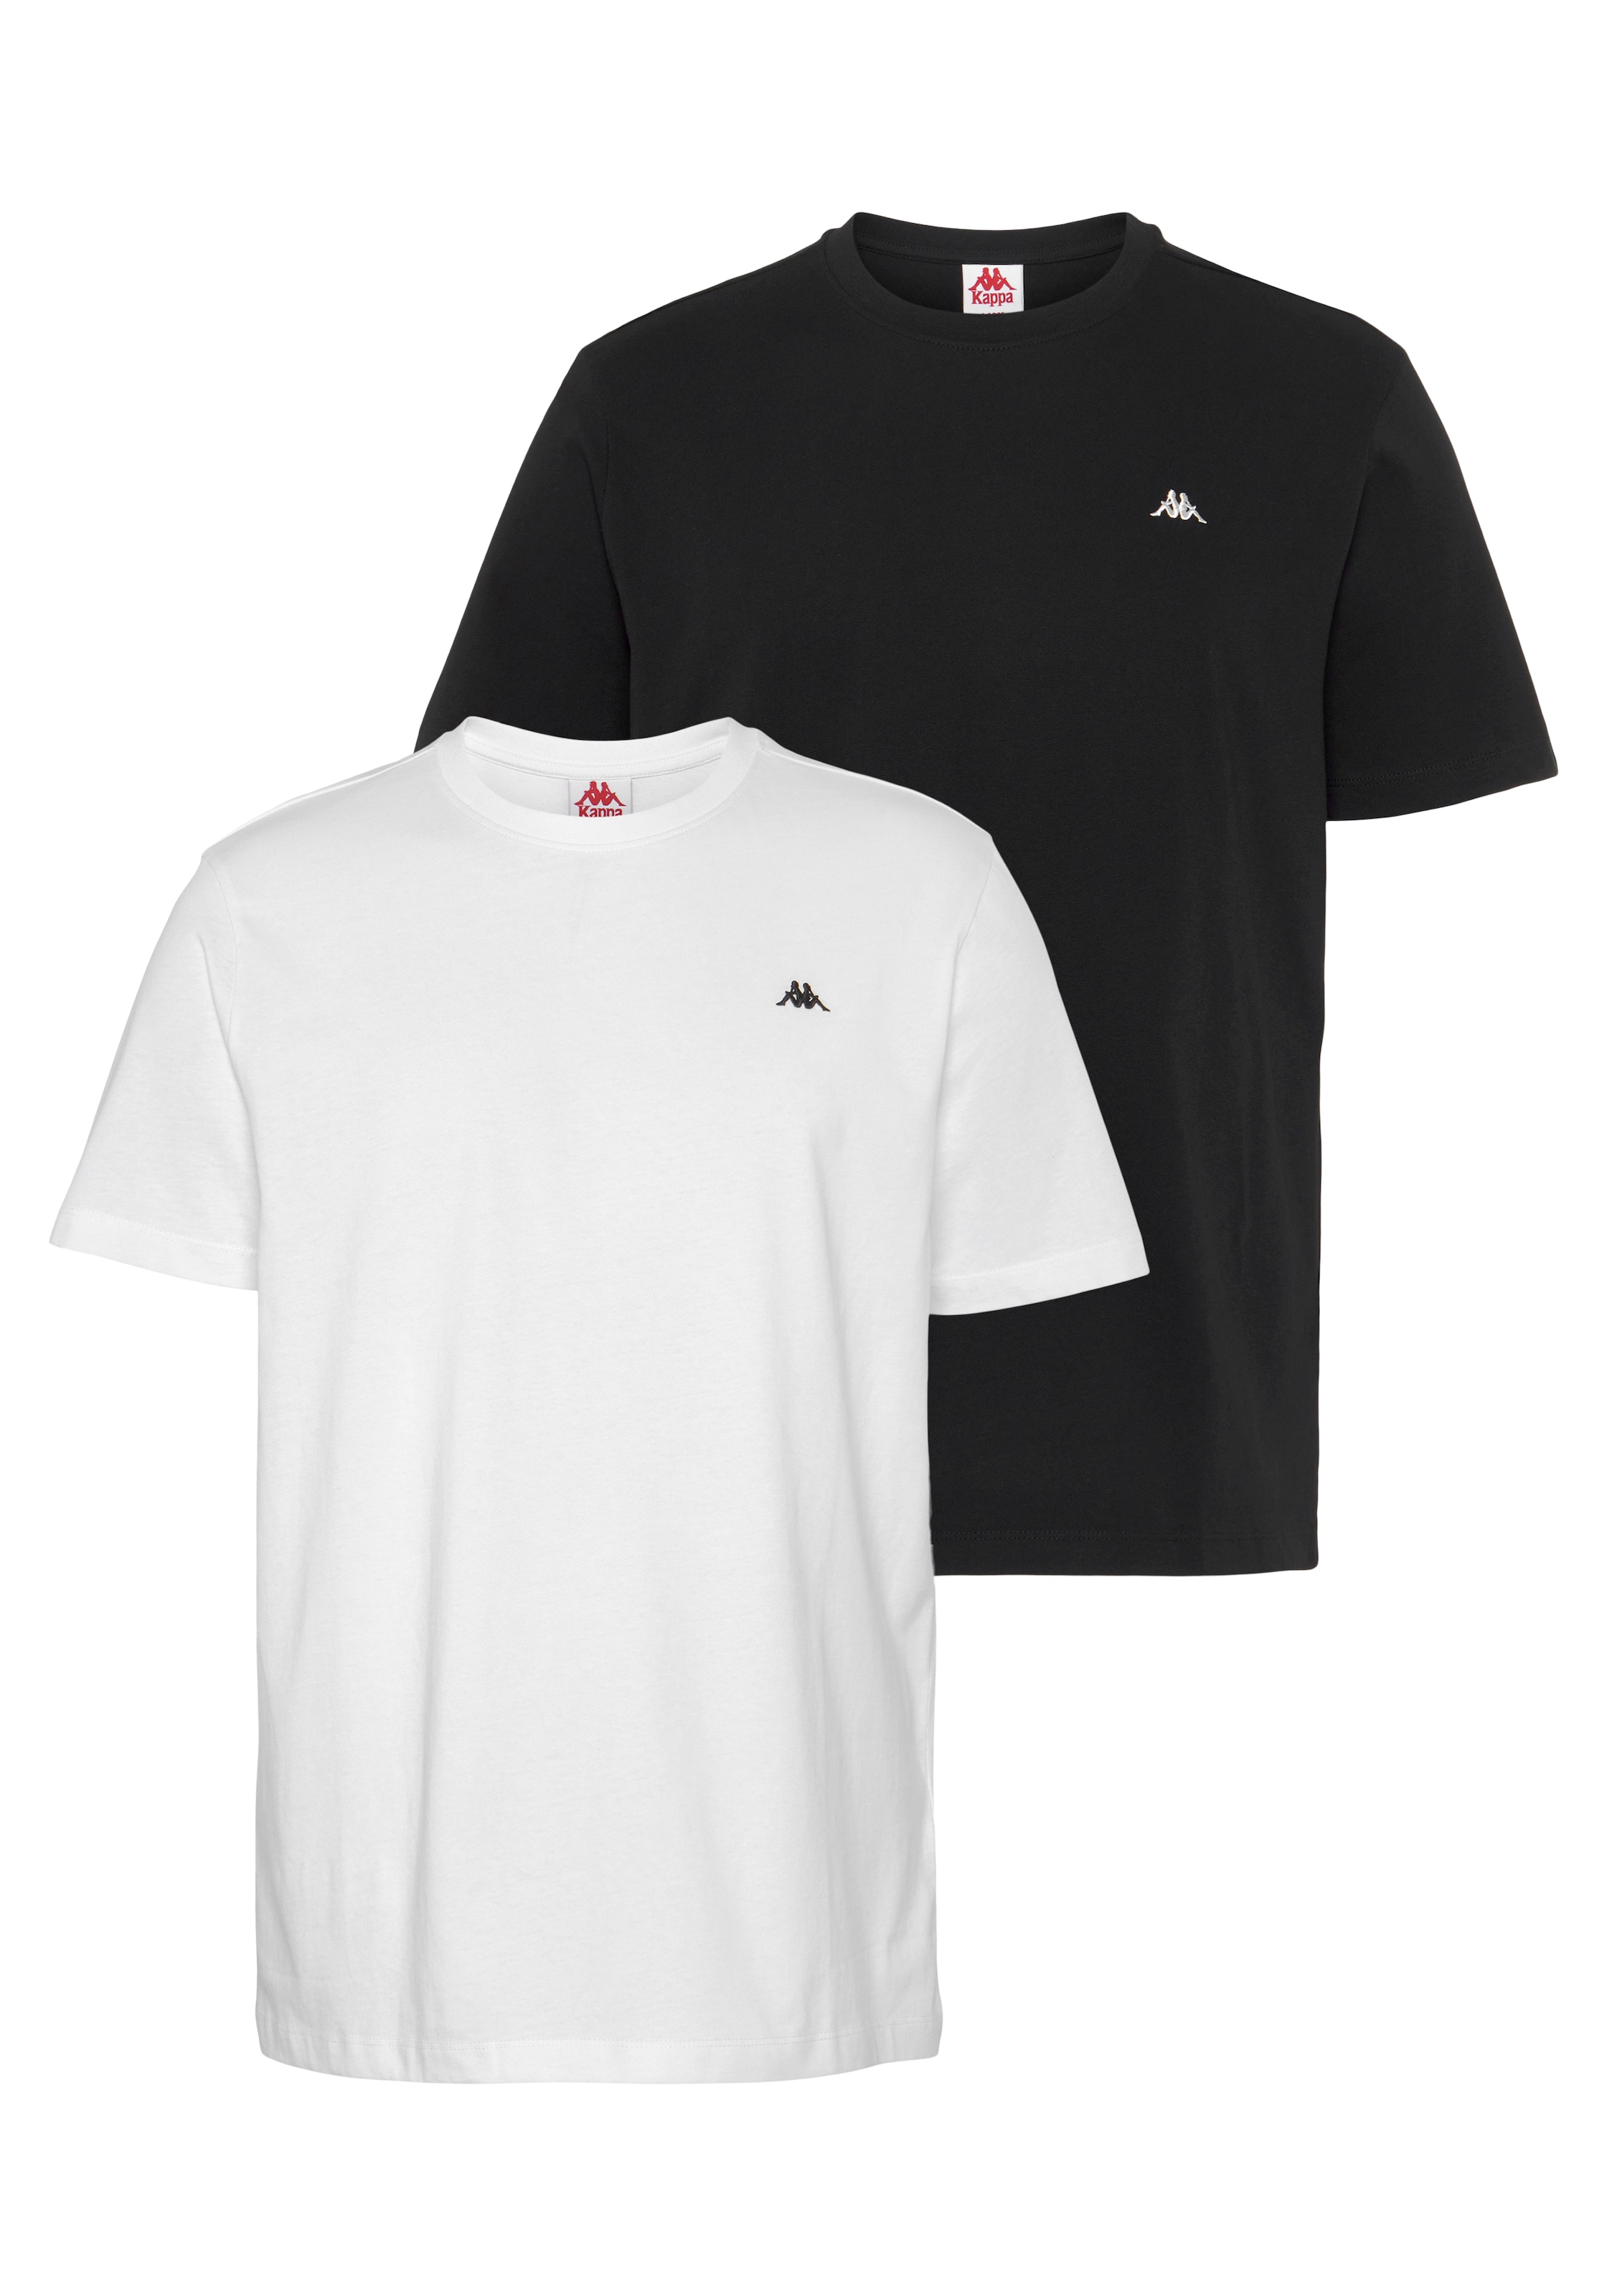 online »Kappa Kappa T-Shirt bei OTTO T-Shirt« bestellen